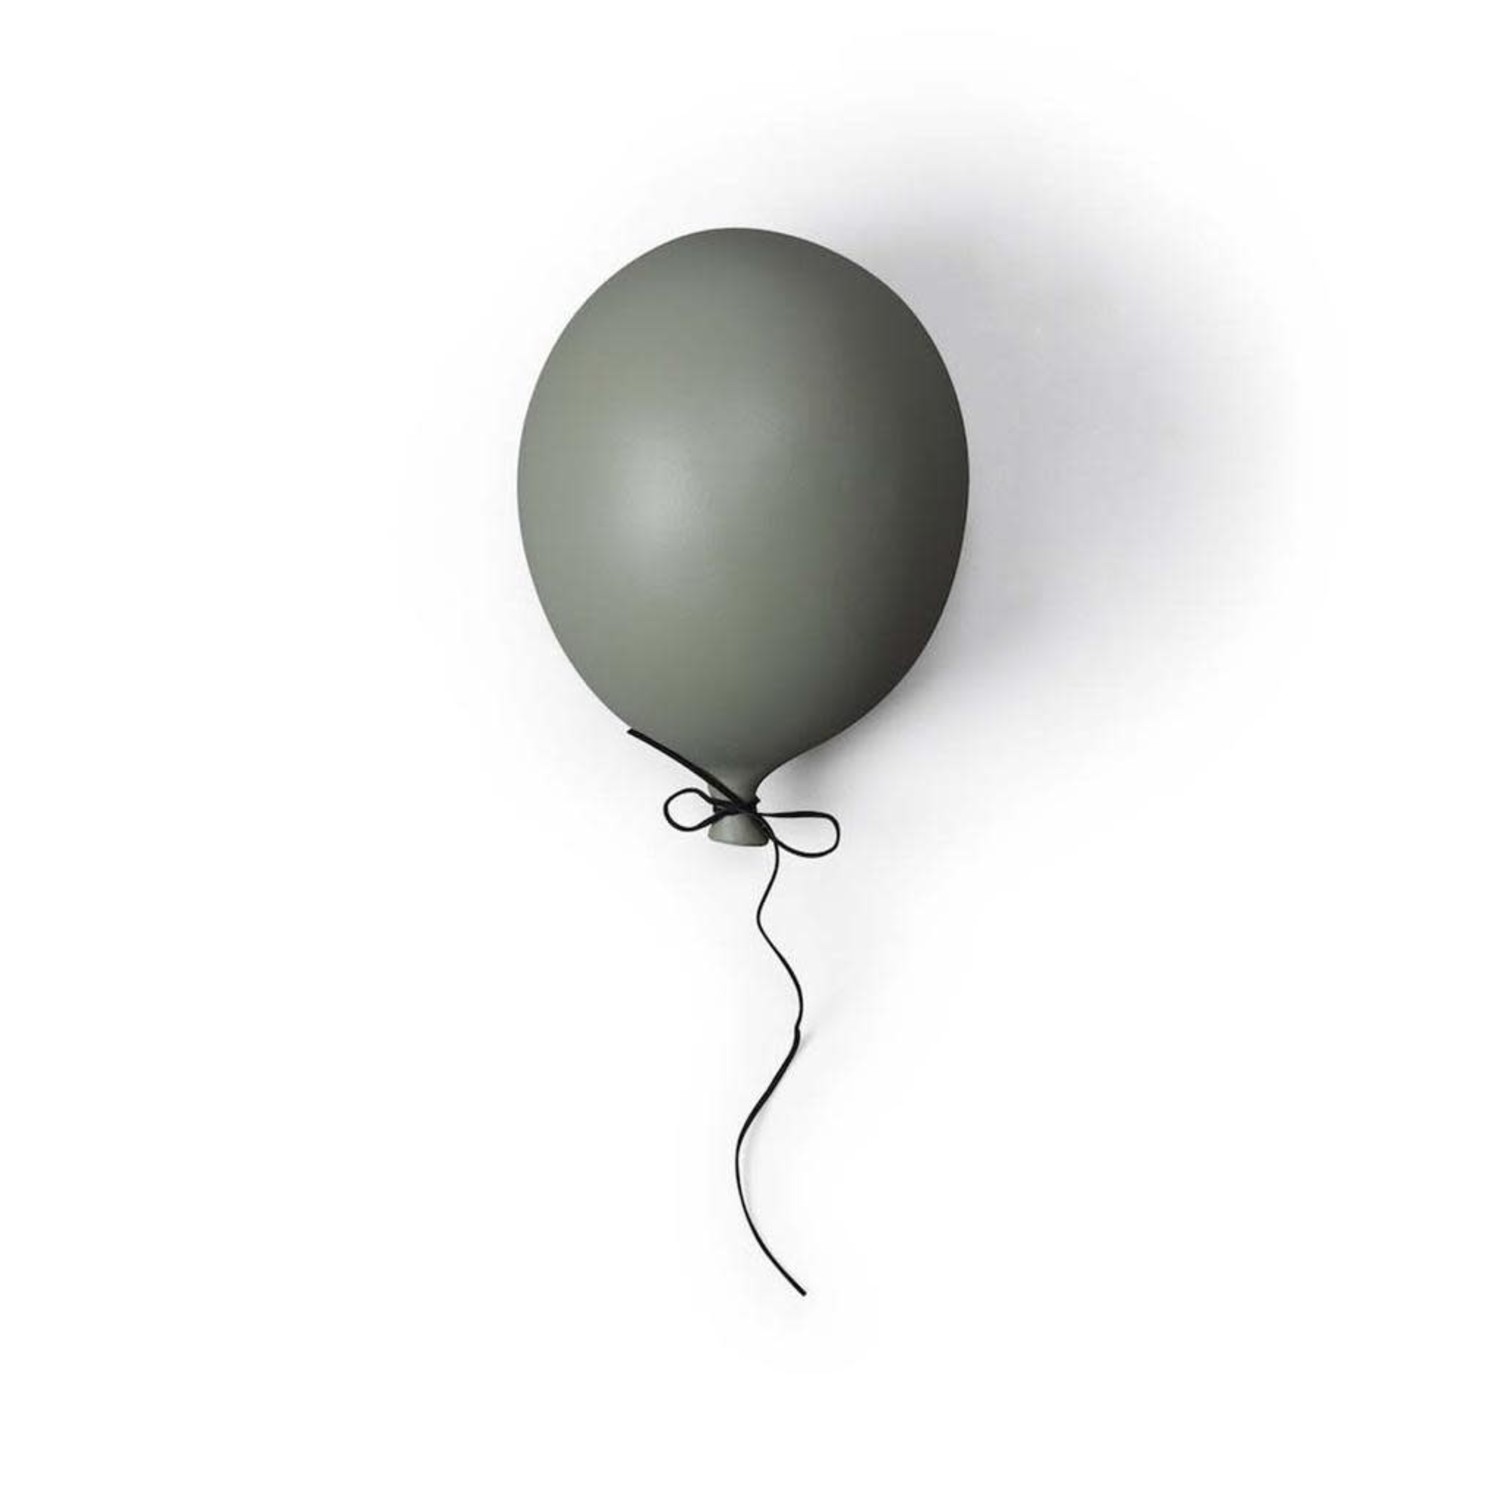 activering benzine hangen ByOn Balloon Decoratie S – Grey - 't Haagje